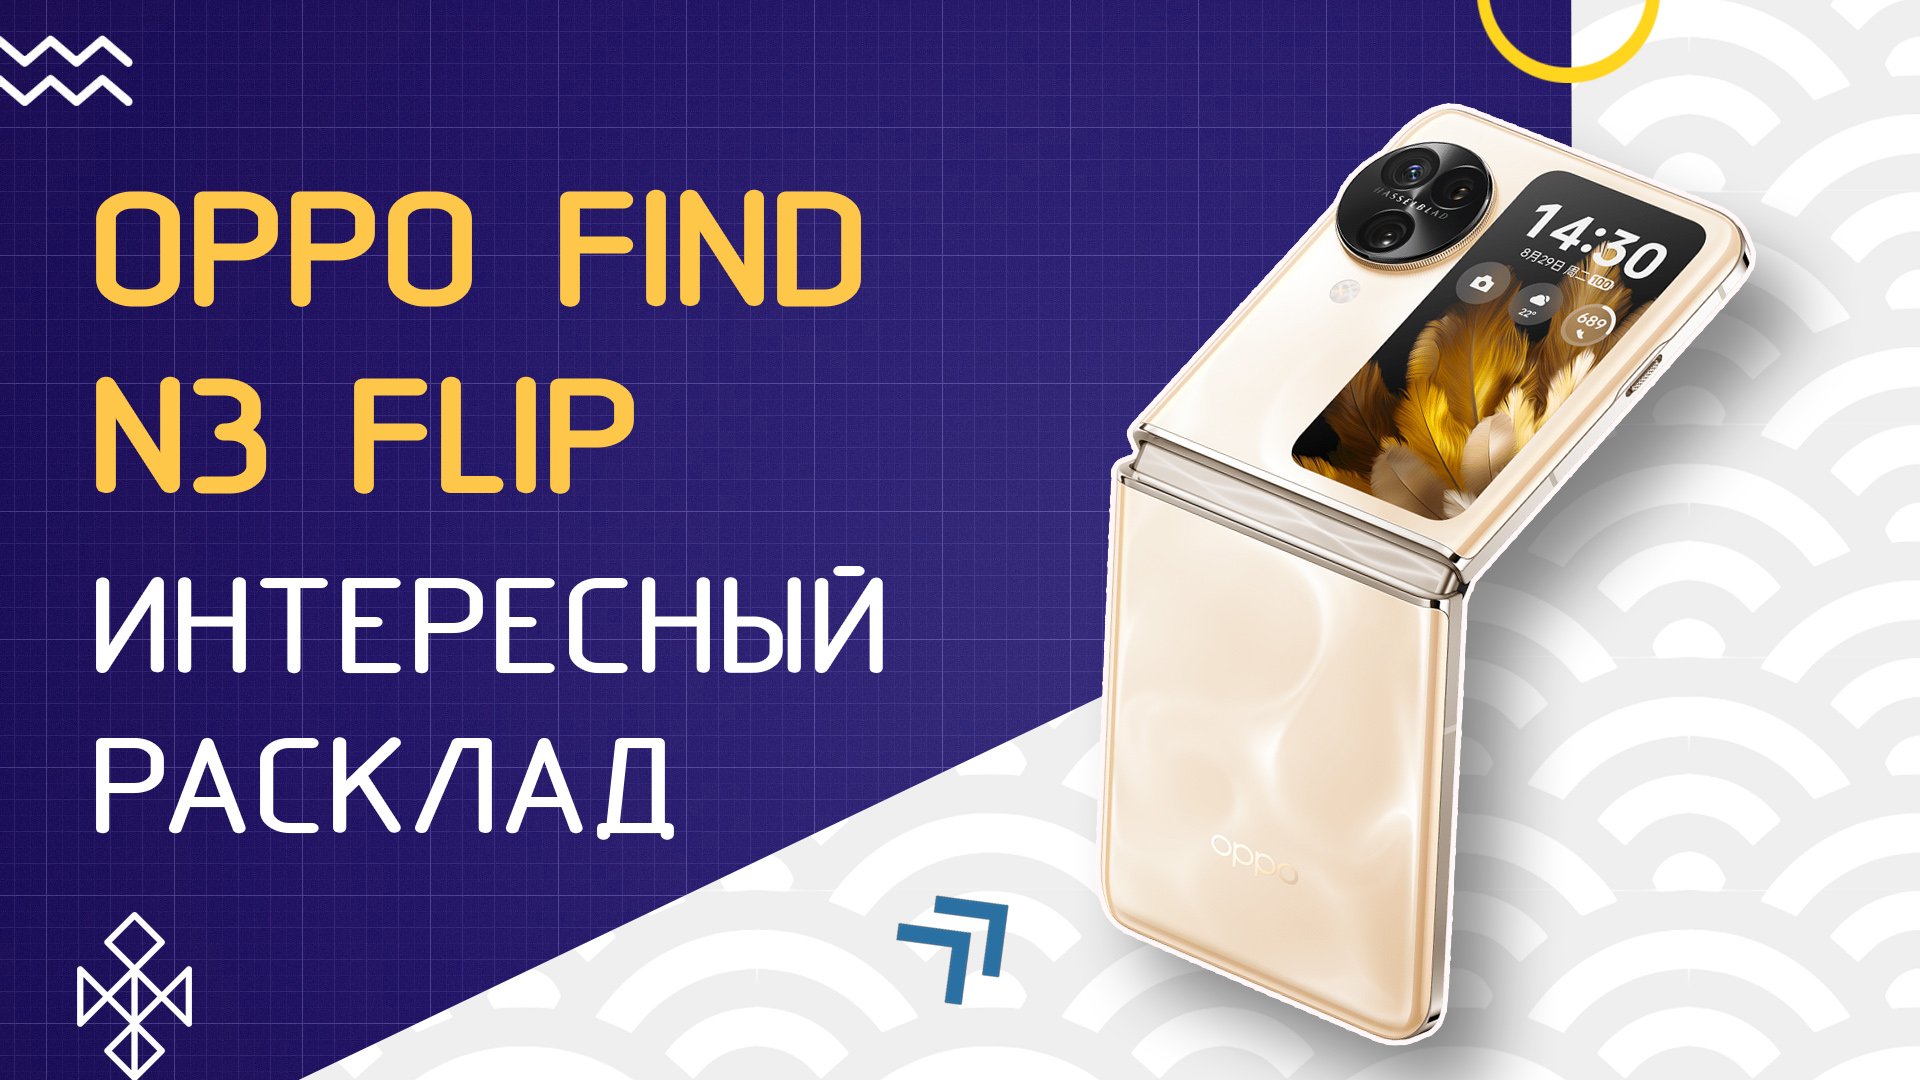 OPPO Find N3 Flip: интересный расклад - обзор раскладного смартфона